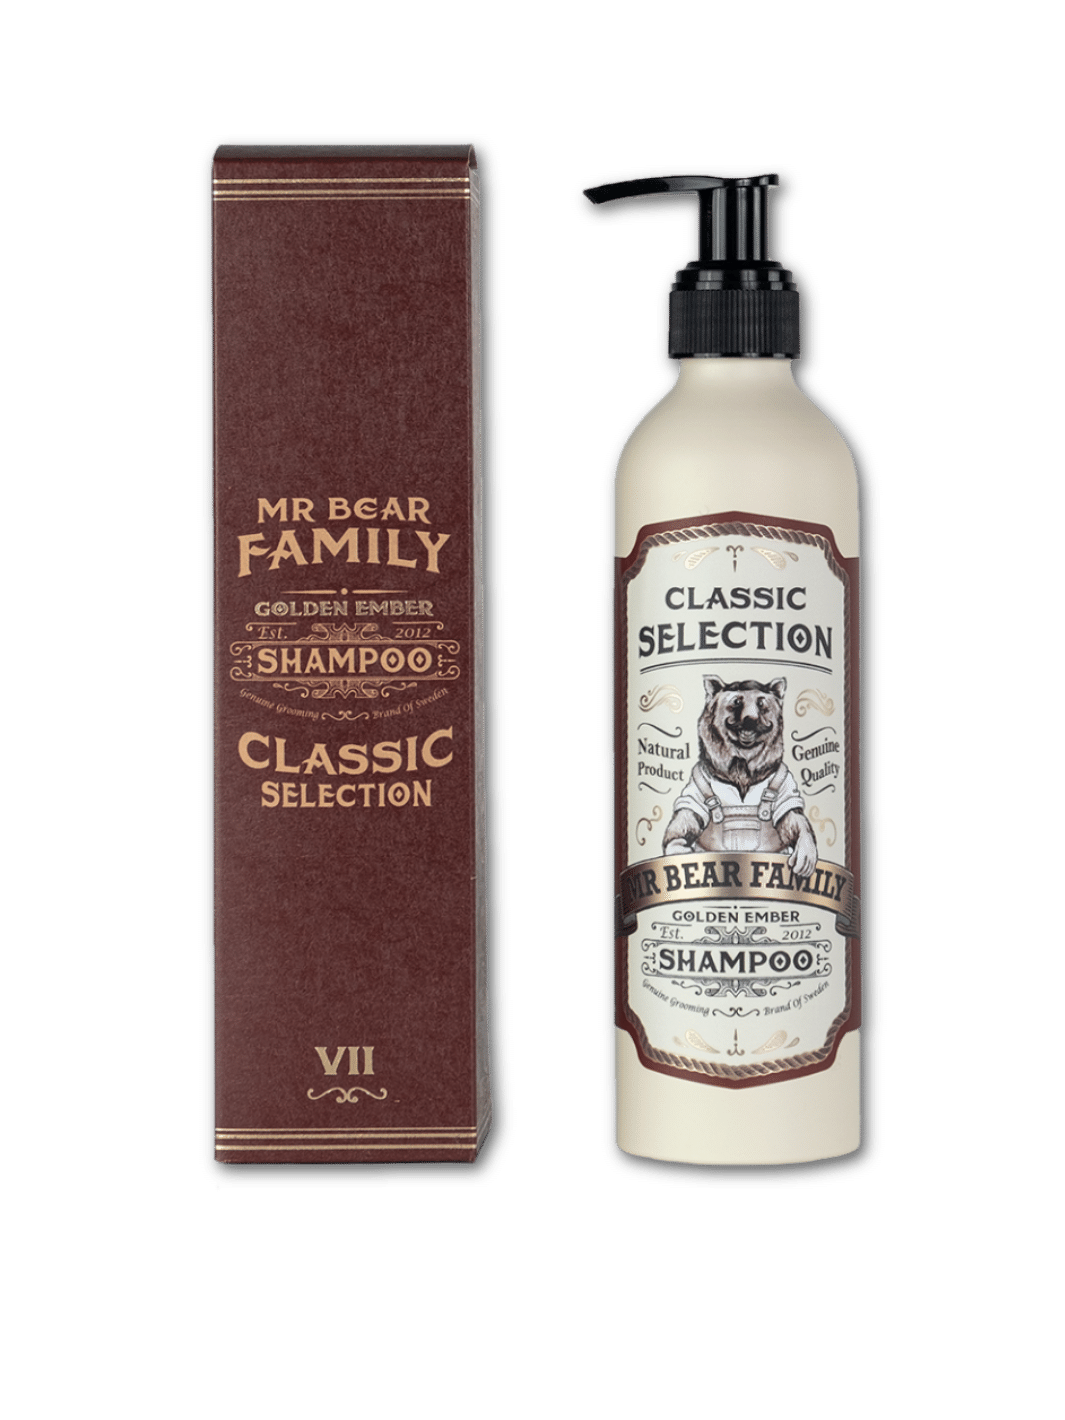 Mr. Bear Golden Ember Shampoo, 250ml Flasche, reinigendes und pflegendes Shampoo für alle Haartypen, in einer eleganten weißen Flasche mit goldenem Etikett, erhältlich bei Phullcutz.